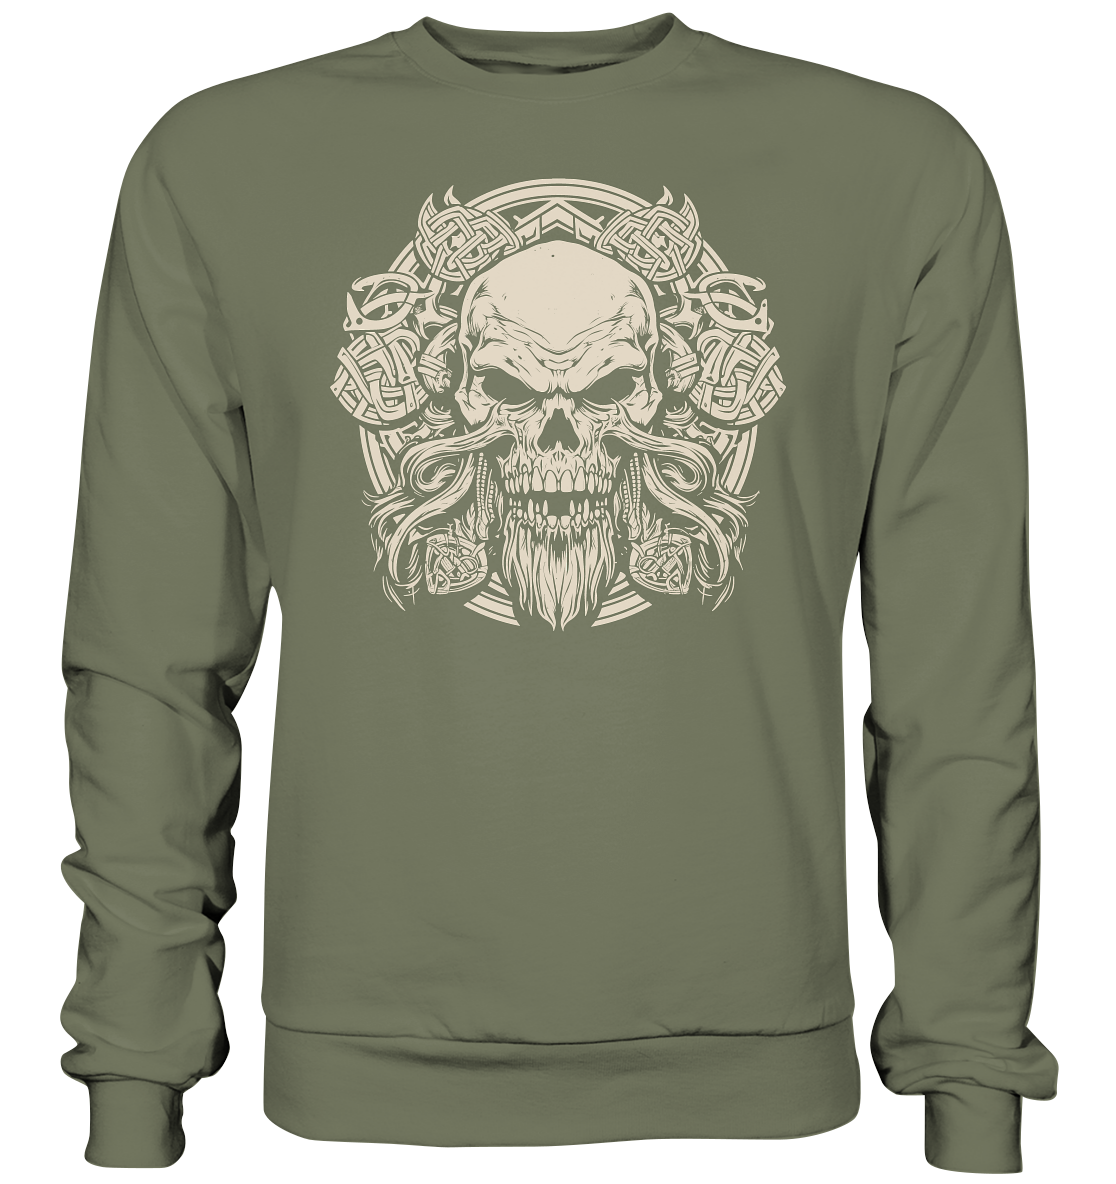 Celtic Skull "Crest I" - Premium Sweatshirt